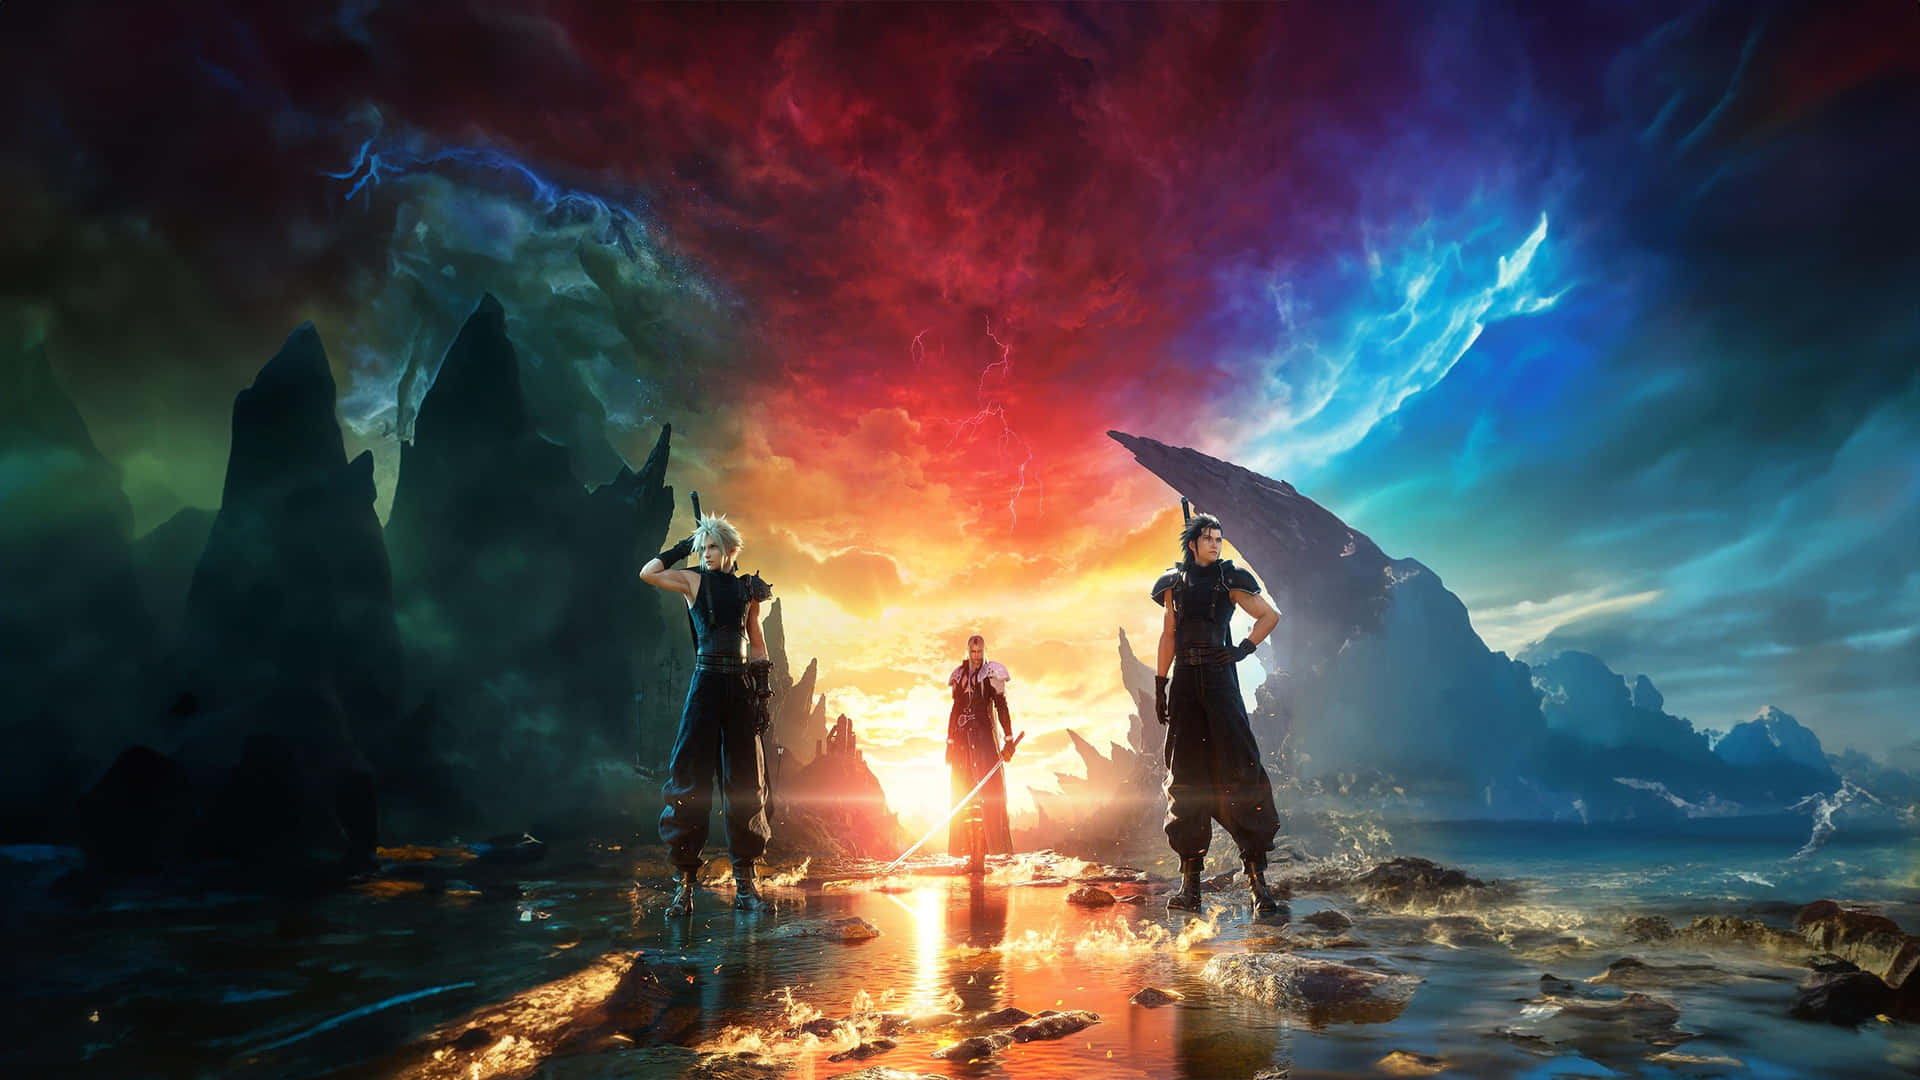 Epic Fantasy Warriors Sunset4 K Art Wallpaper